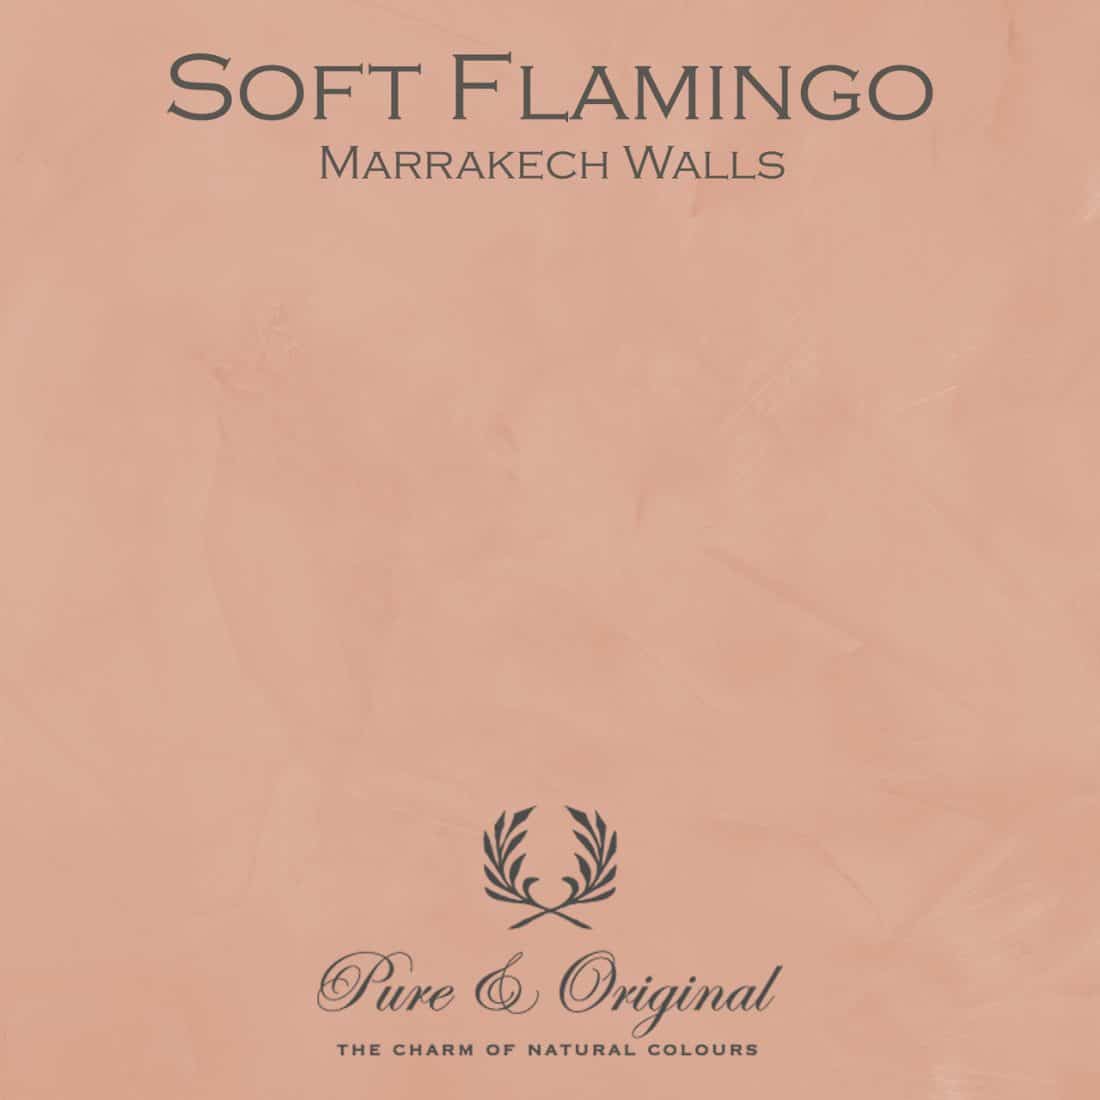 Soft Flamingo Marrakech Walls Pure Original